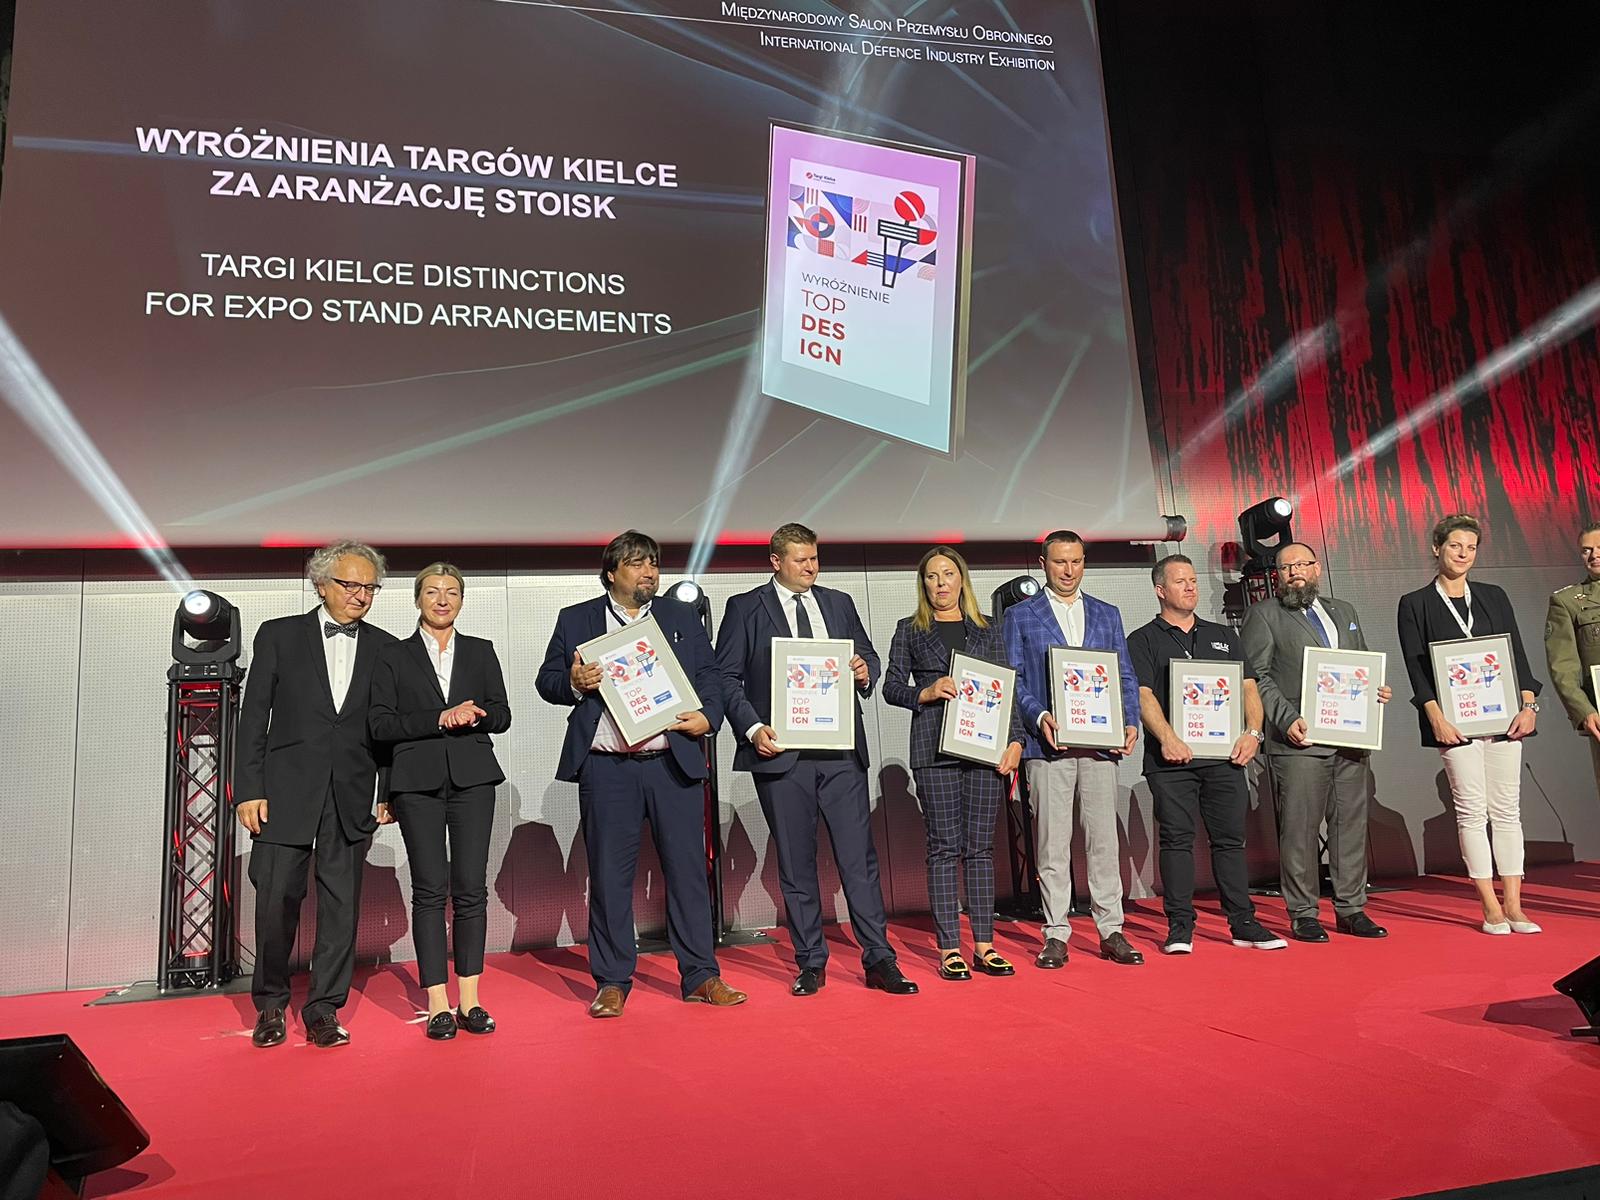 PIAP Space i Creotech z nagrodami podczas Międzynarodowego Salonu Przemysłu Obronnego w Kielcach